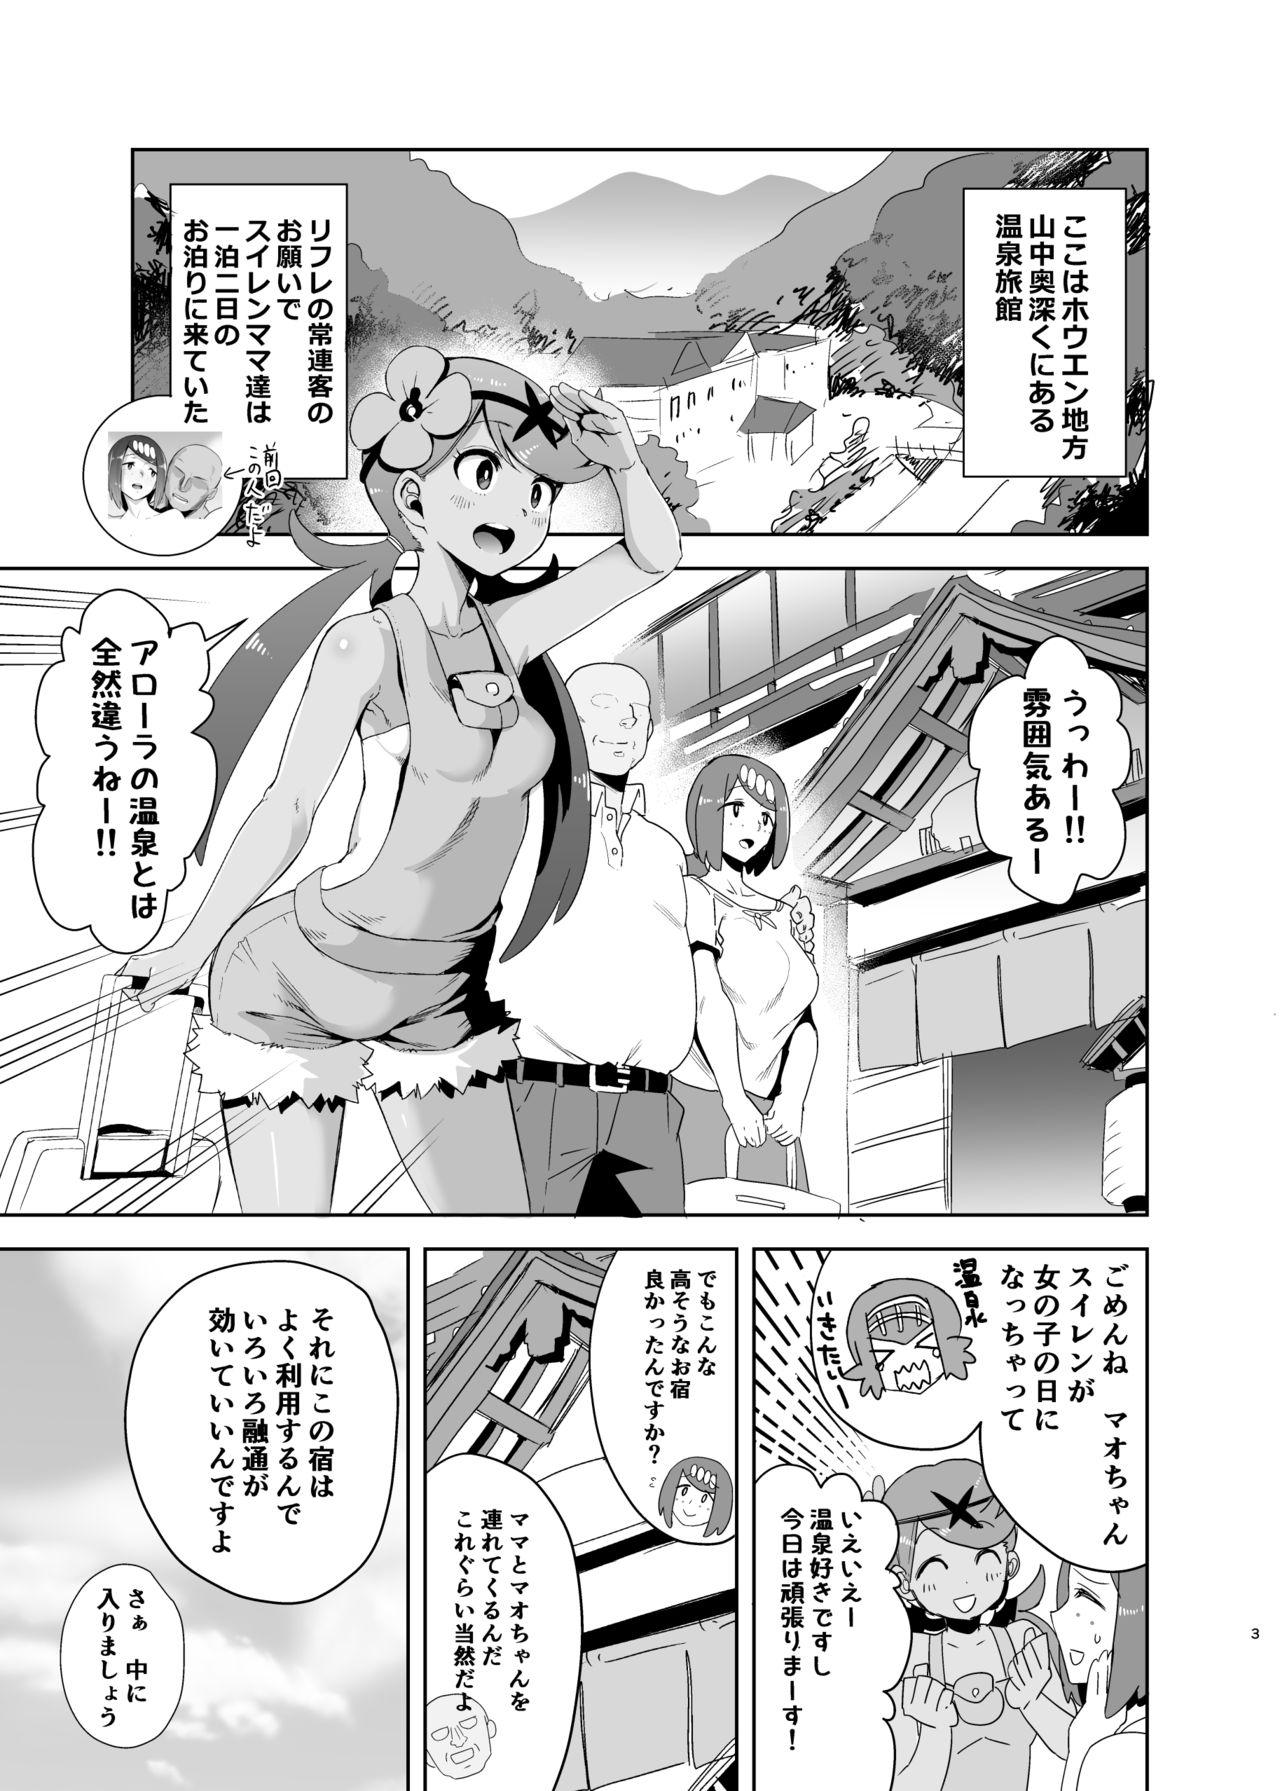 Kink Alola no Yoru no Sugata 2 - Pokemon Jeans - Page 2